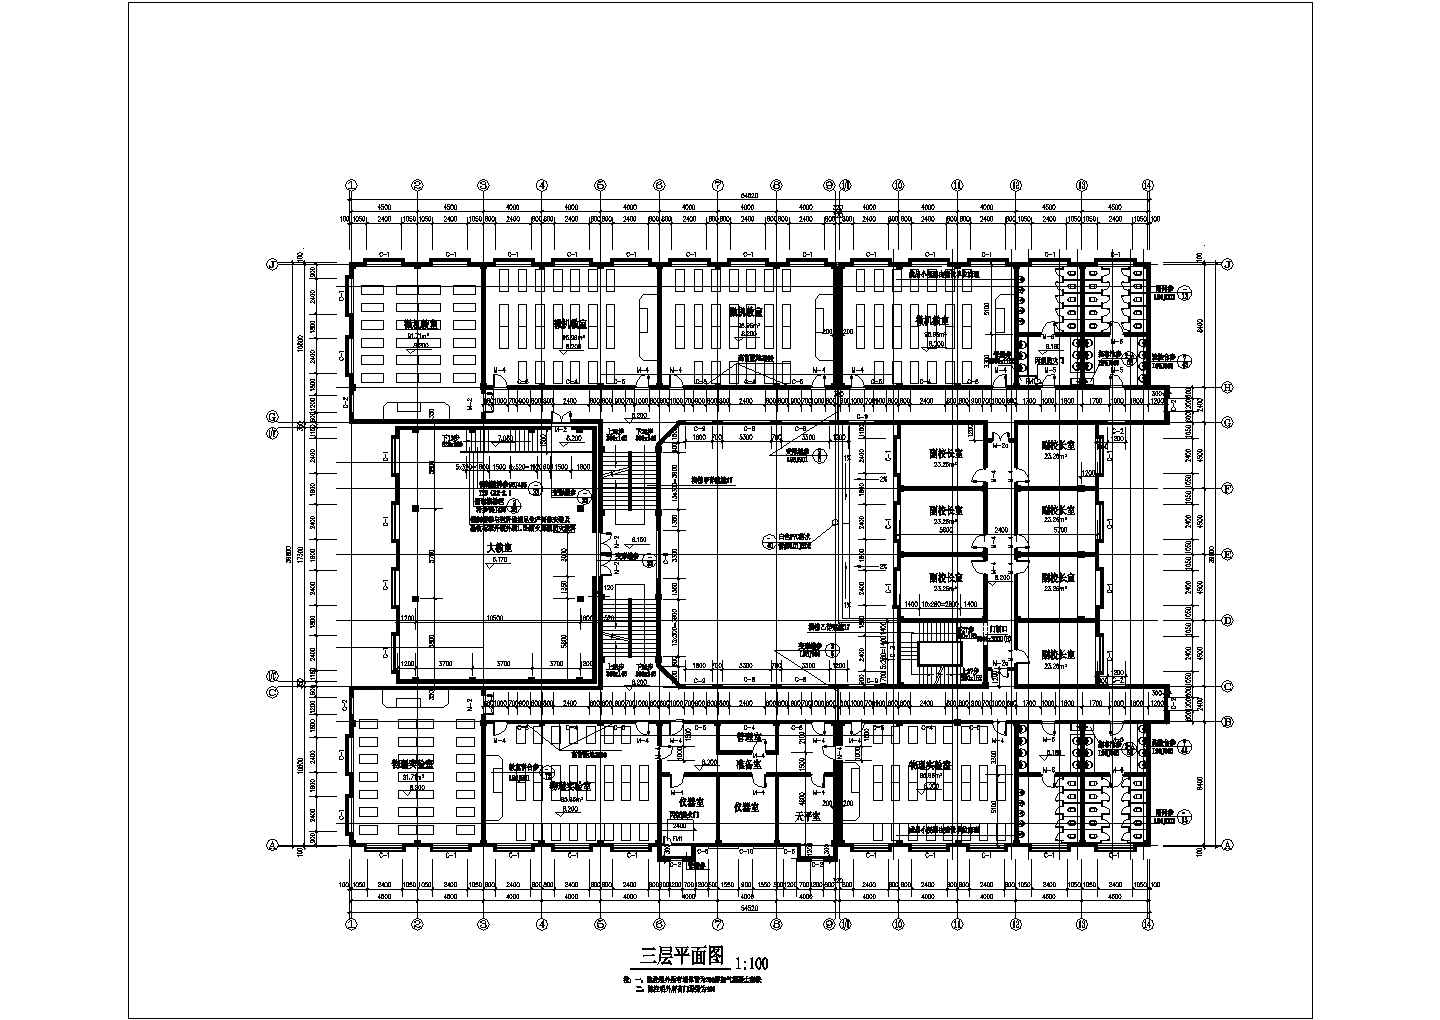  5+1架空层中学教学综合楼建筑施工图【平立剖】cad图纸